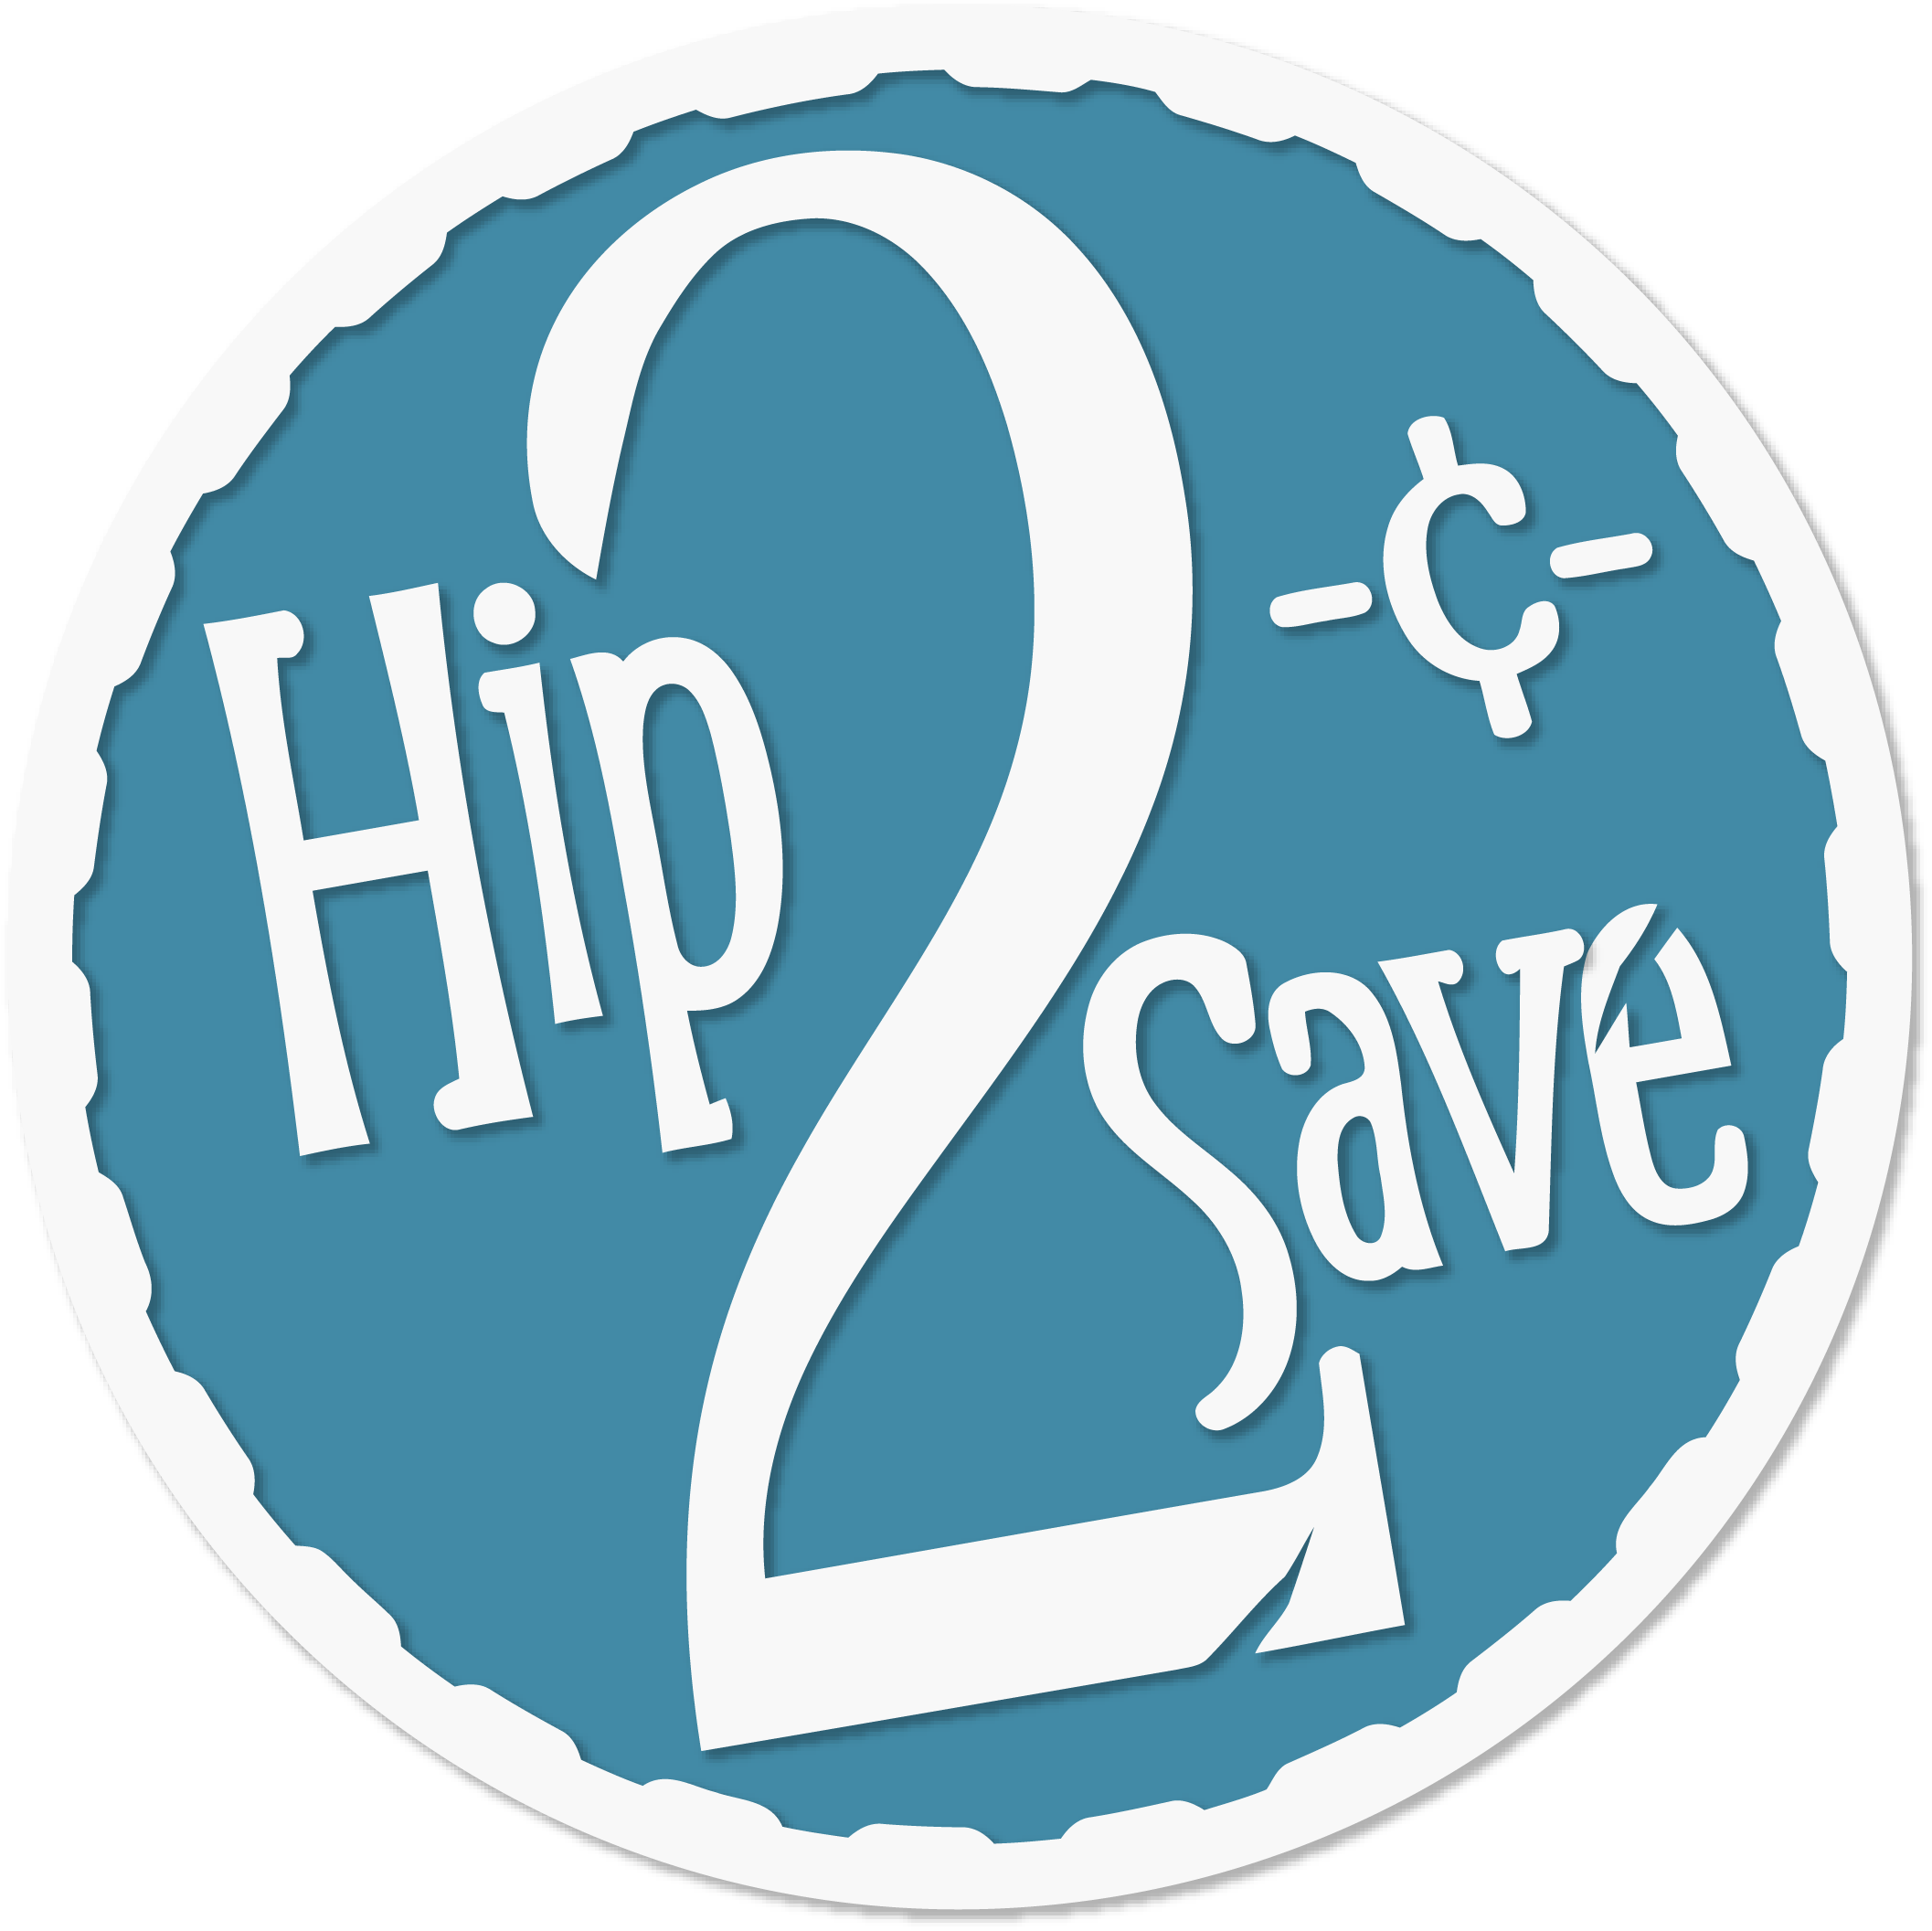 Hip2Save Logo